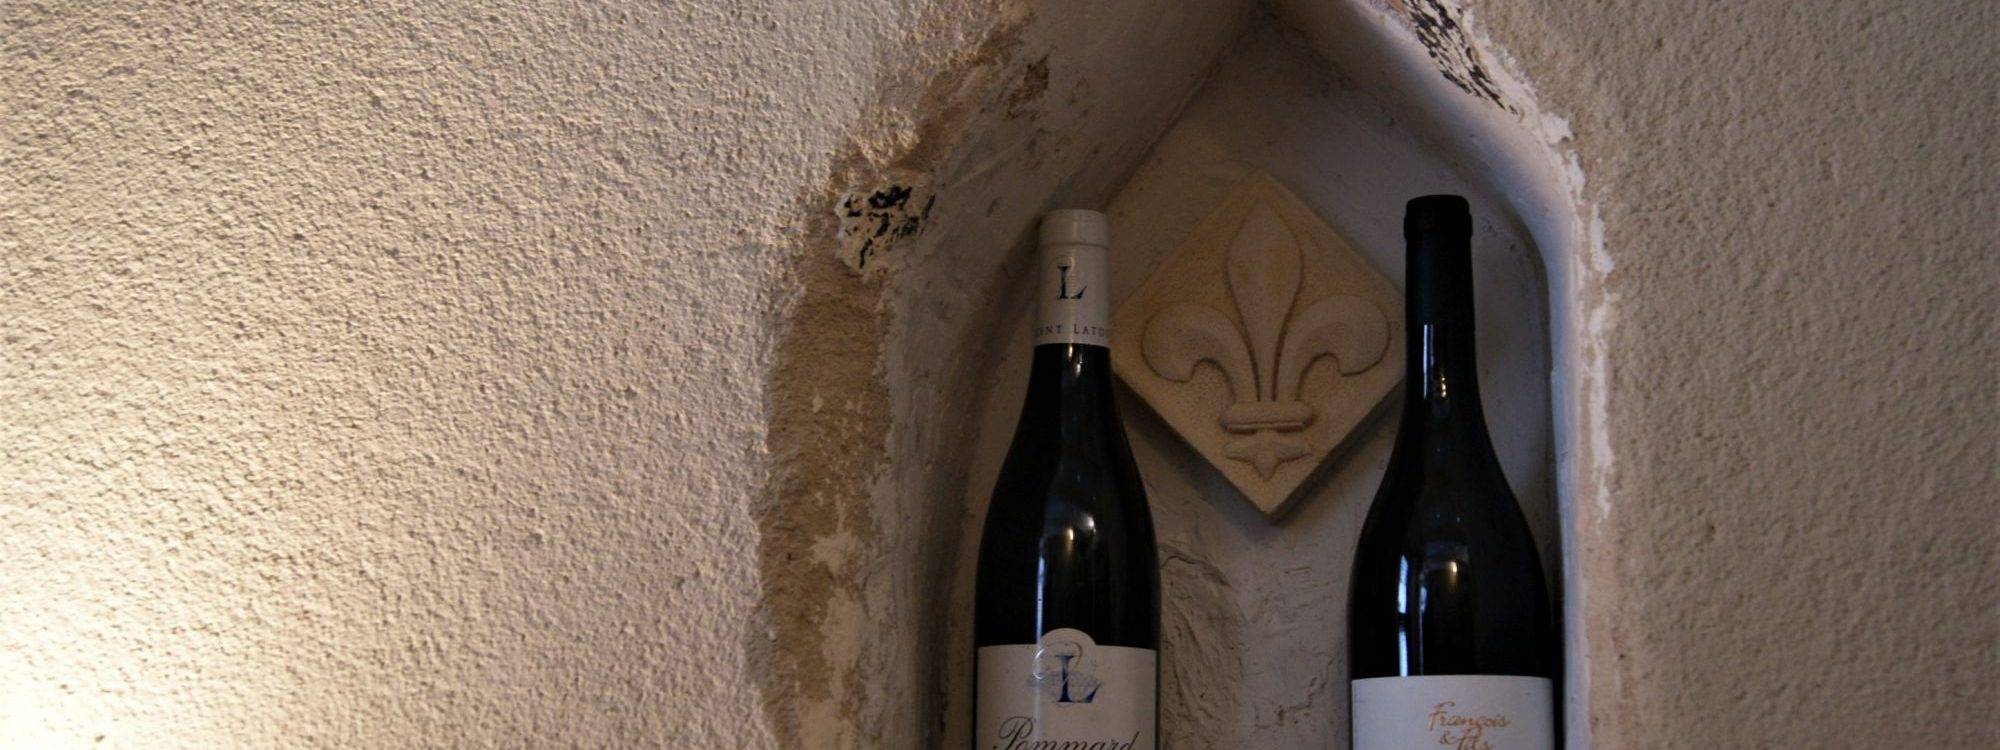 Major’L : sélection et dégustation de vins à Colmar dans le Haut-Rhin Kingersheim